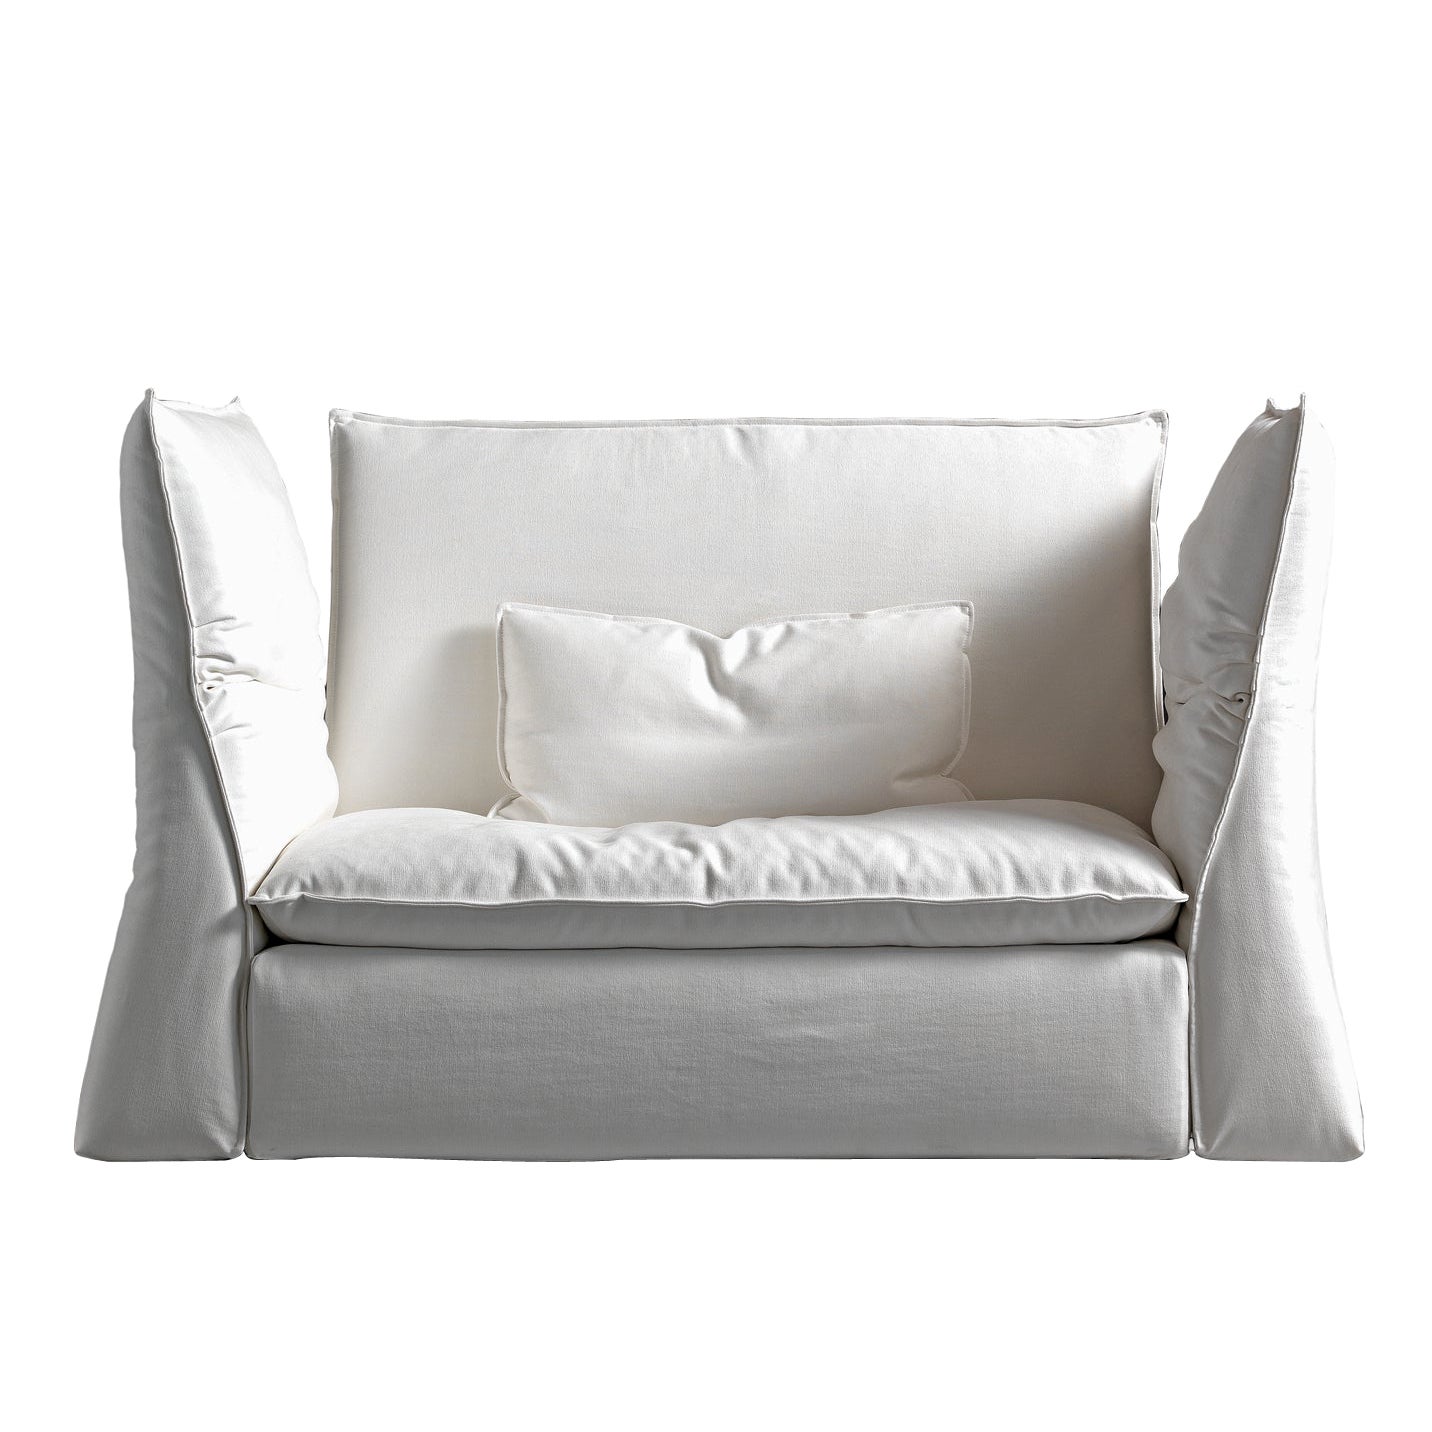 Les Femmes: Les Femmes Medium Sessel mit weißer Byblos-Polsterung von Giuseppe Vigan